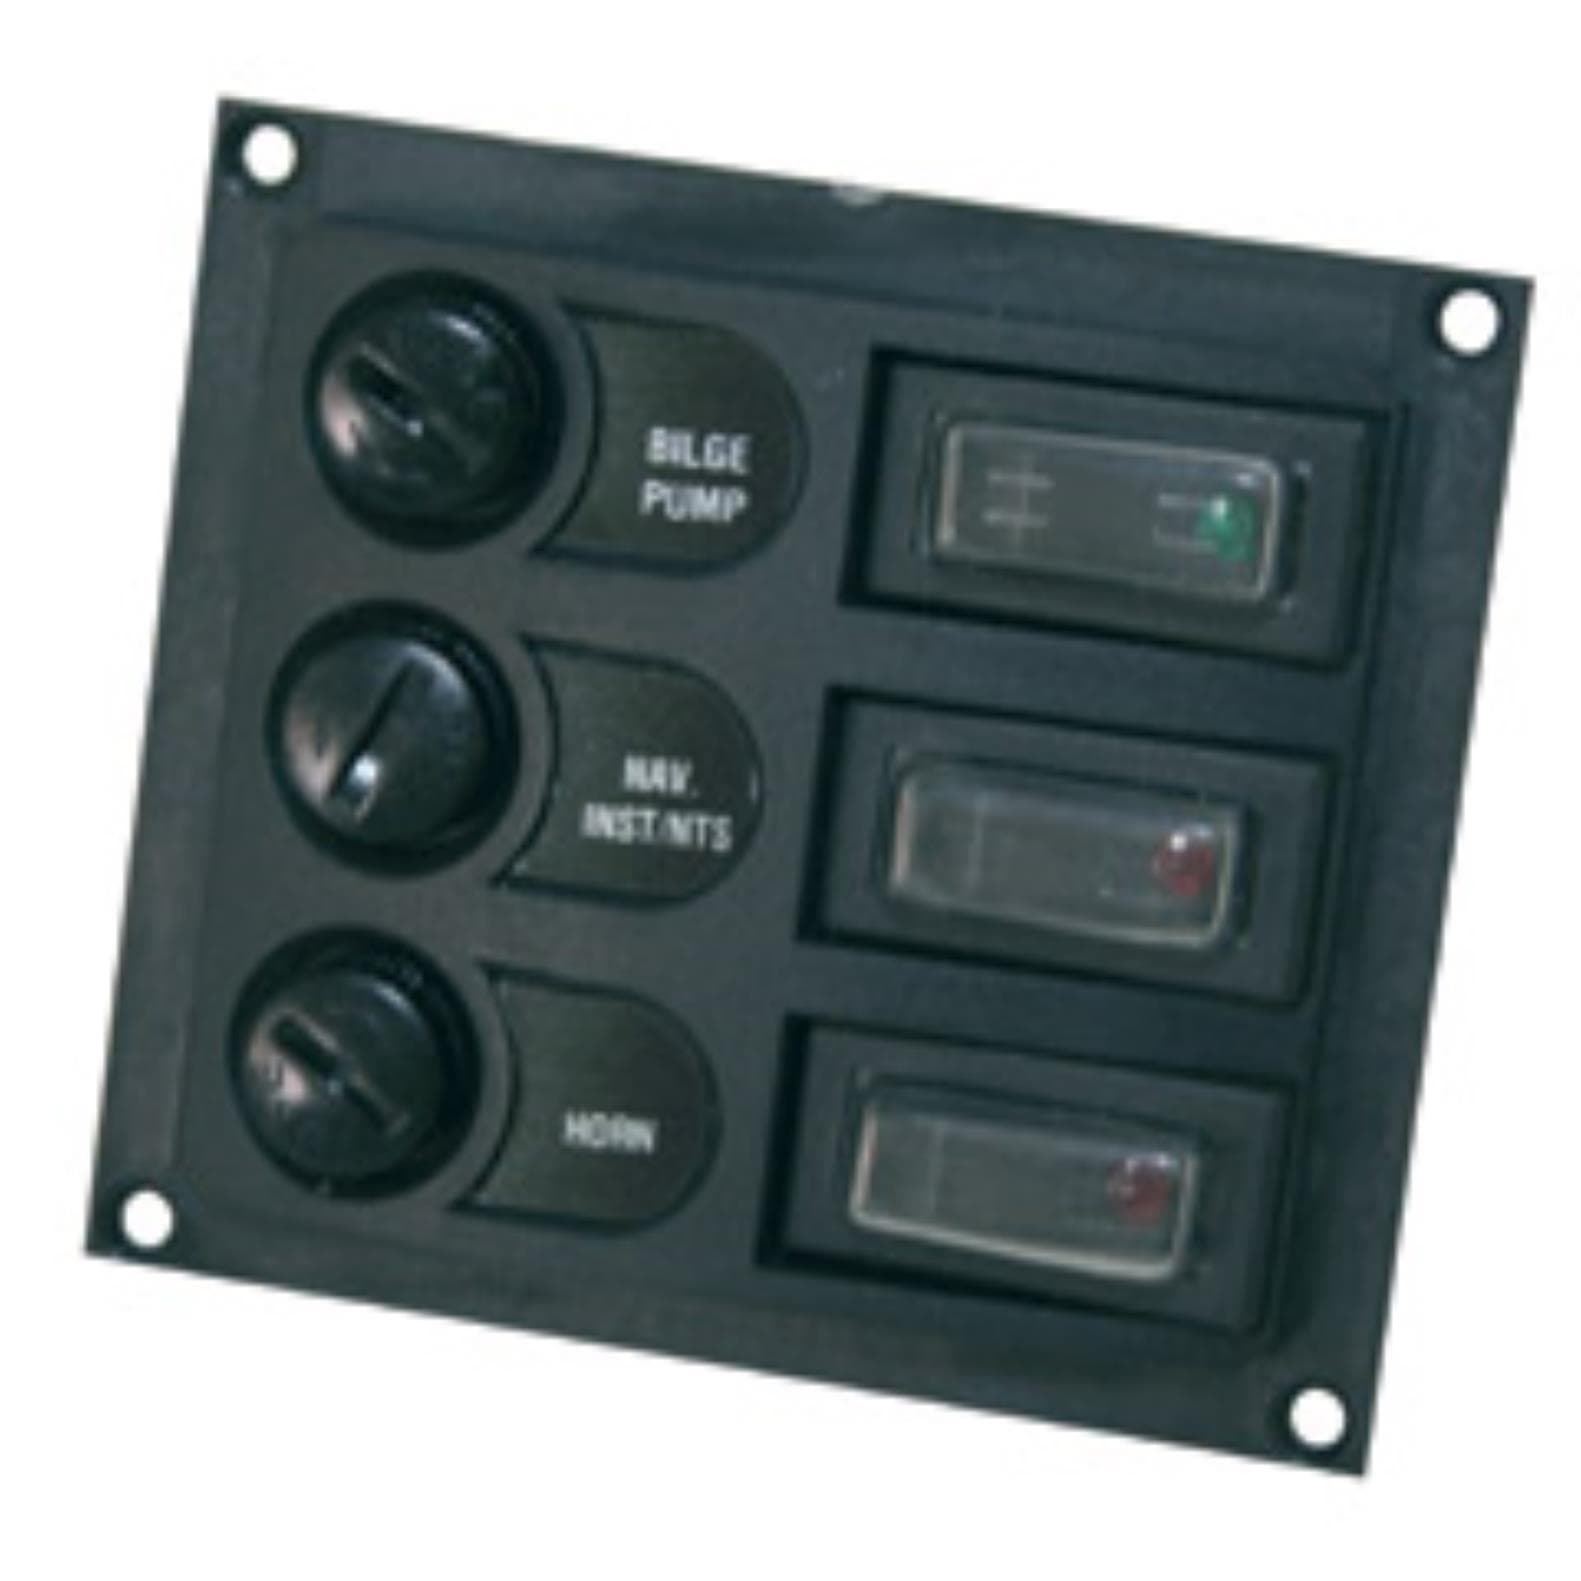 Panel Interruptor Nuova Rade - Imagen 1